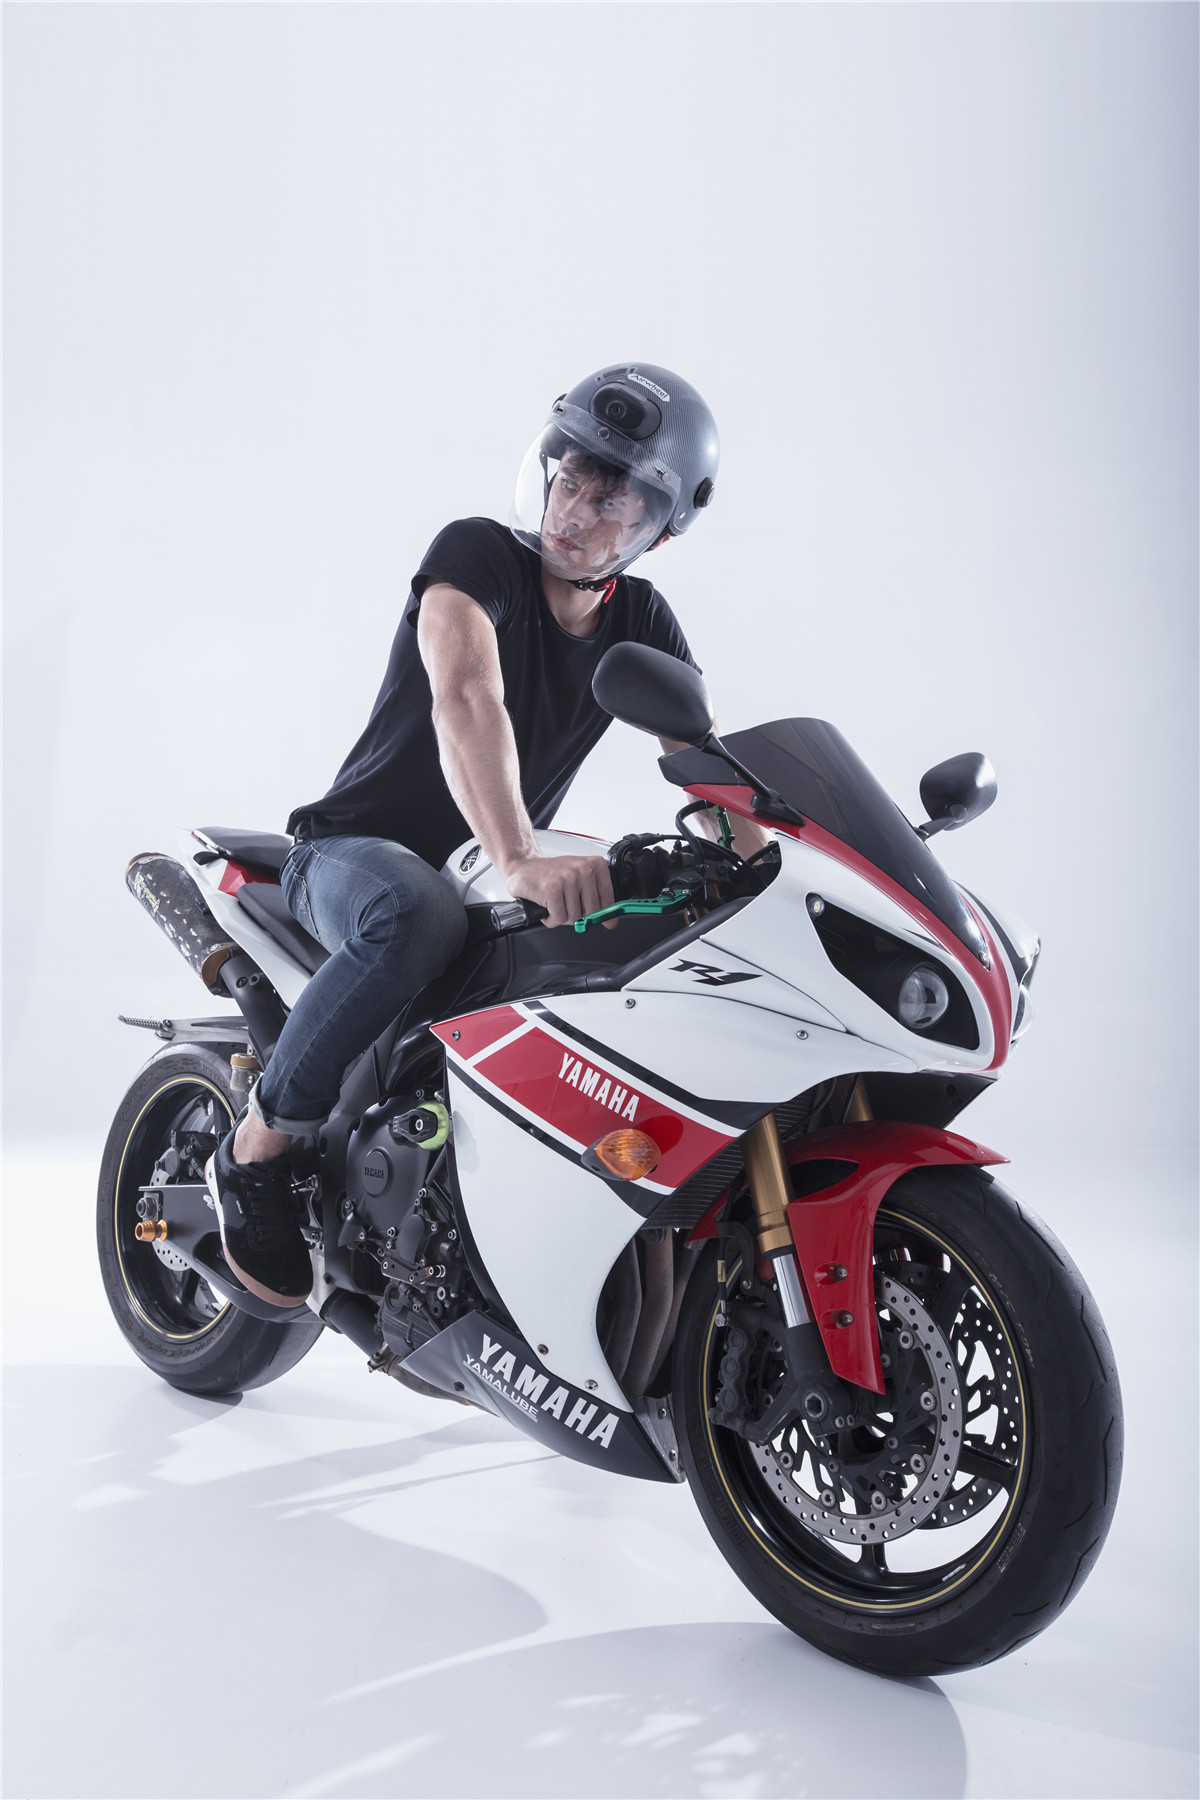 Airwheel_C6_smart_motorcycle_helmet